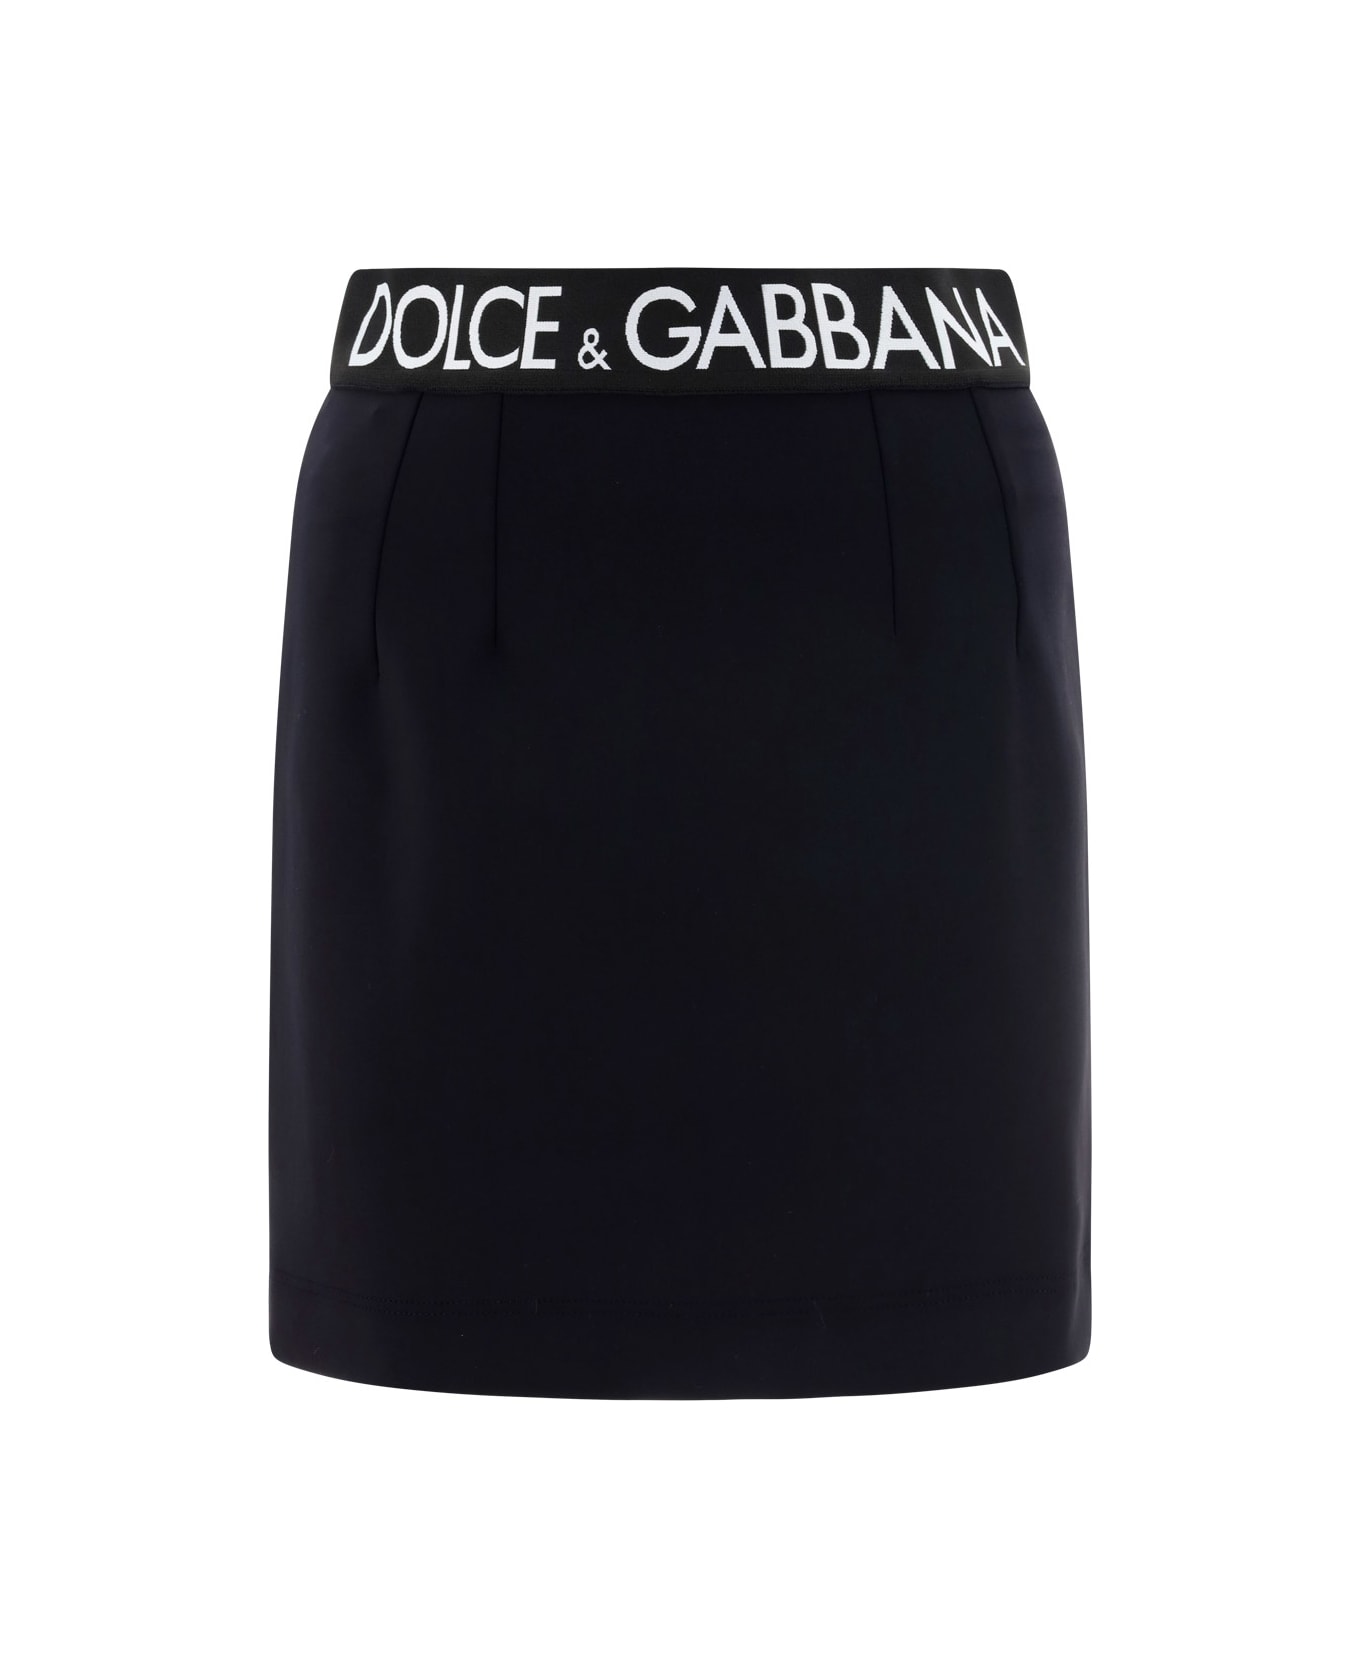 Dolce trump & Gabbana Skirt - Nero